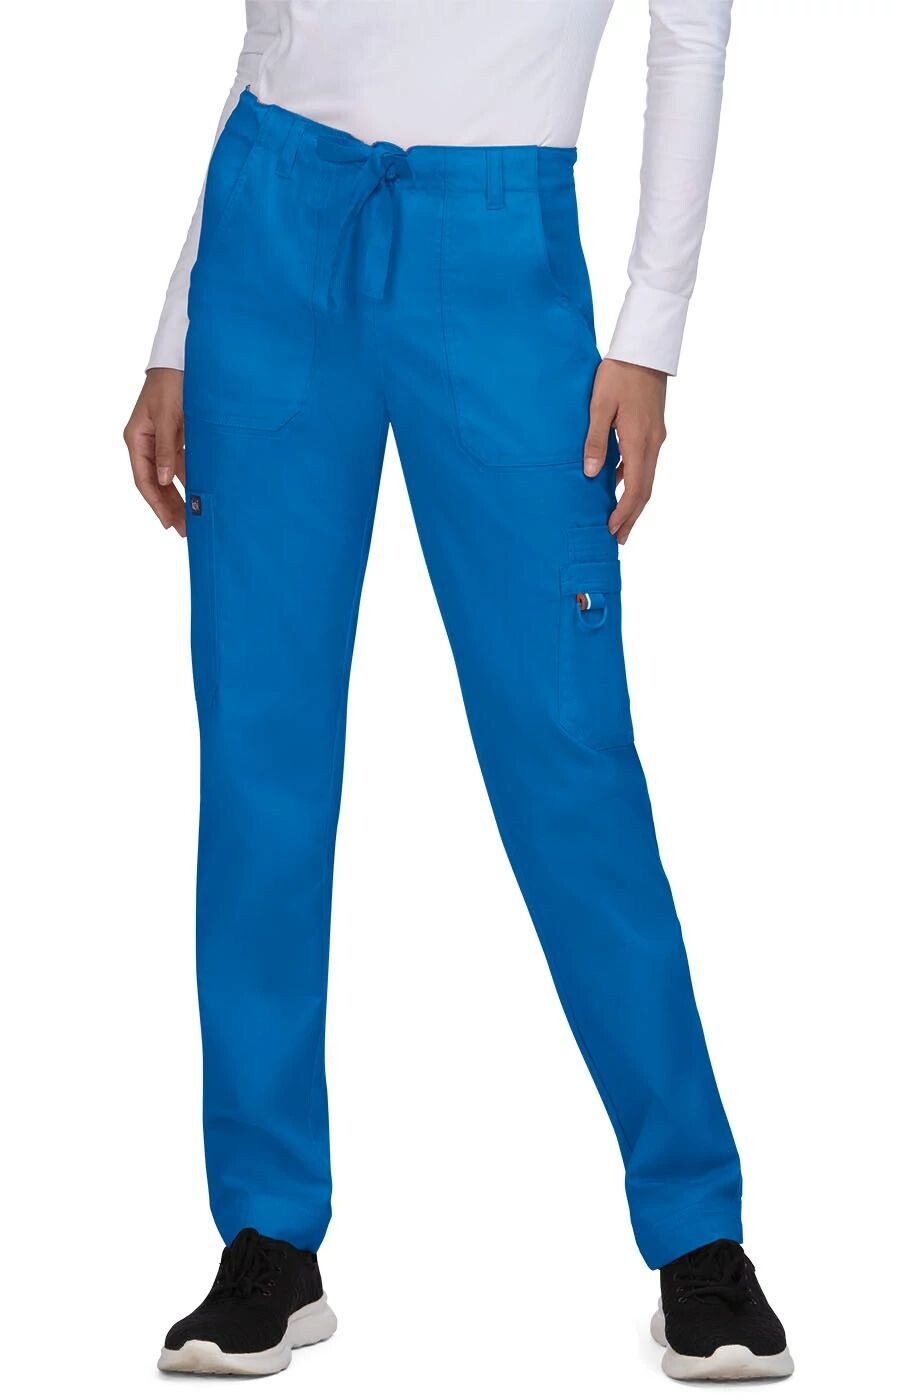 Pantalone KOI STRETCH - SYDNEY Donna Colore 20. Royal Blue